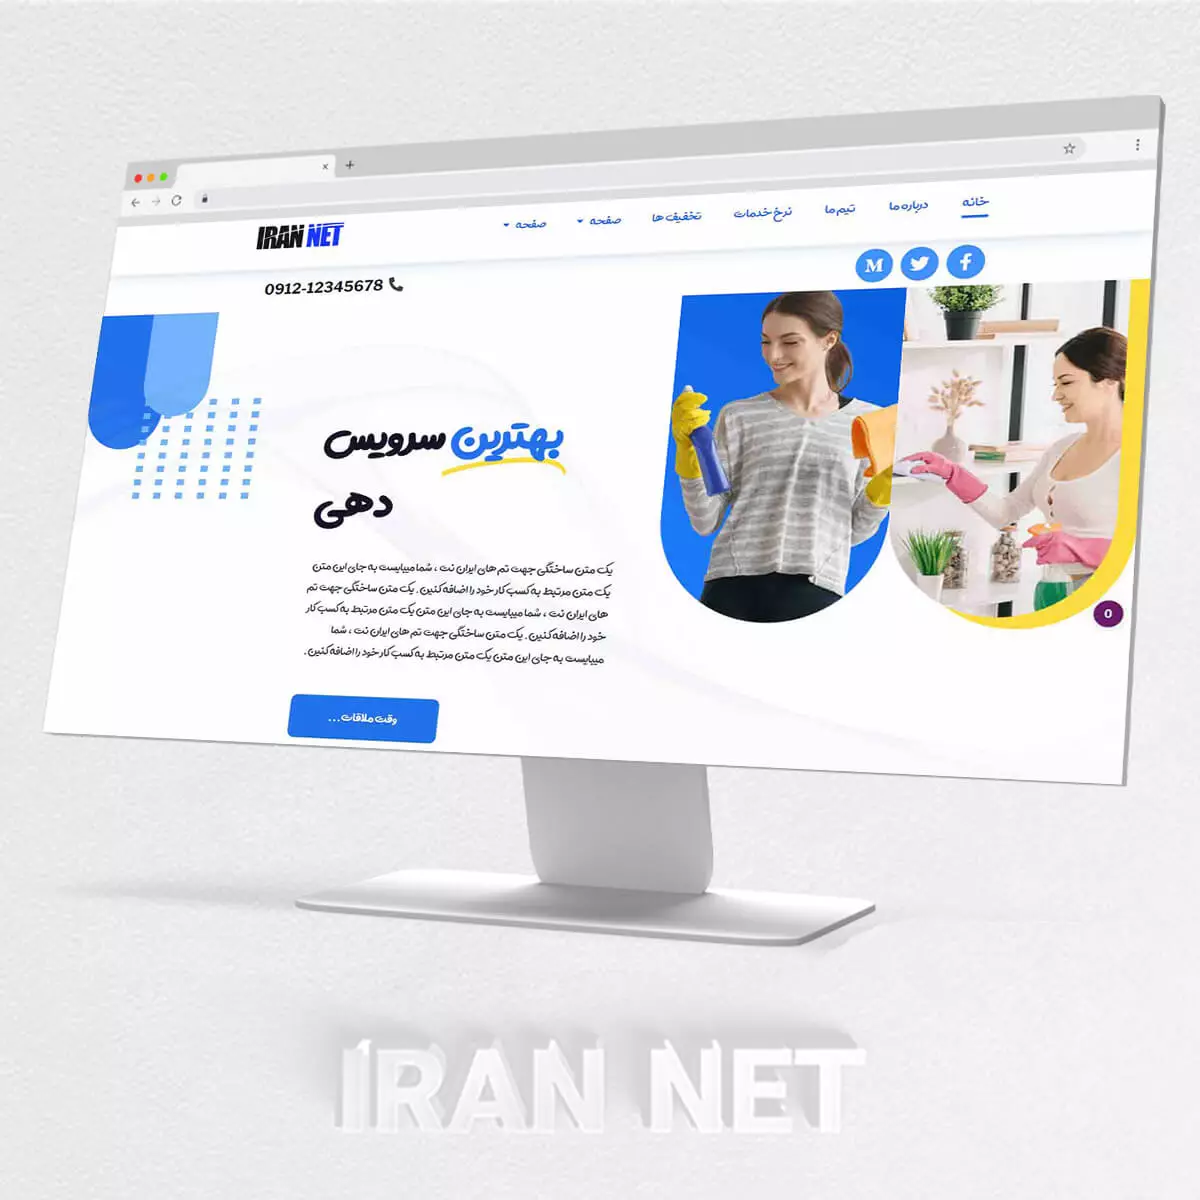 سایت رایگان-طراحی سایت رایگان-قالب آماده رایگان وردپرس-طراحی سایت خدماتی رایگان-ایران نت